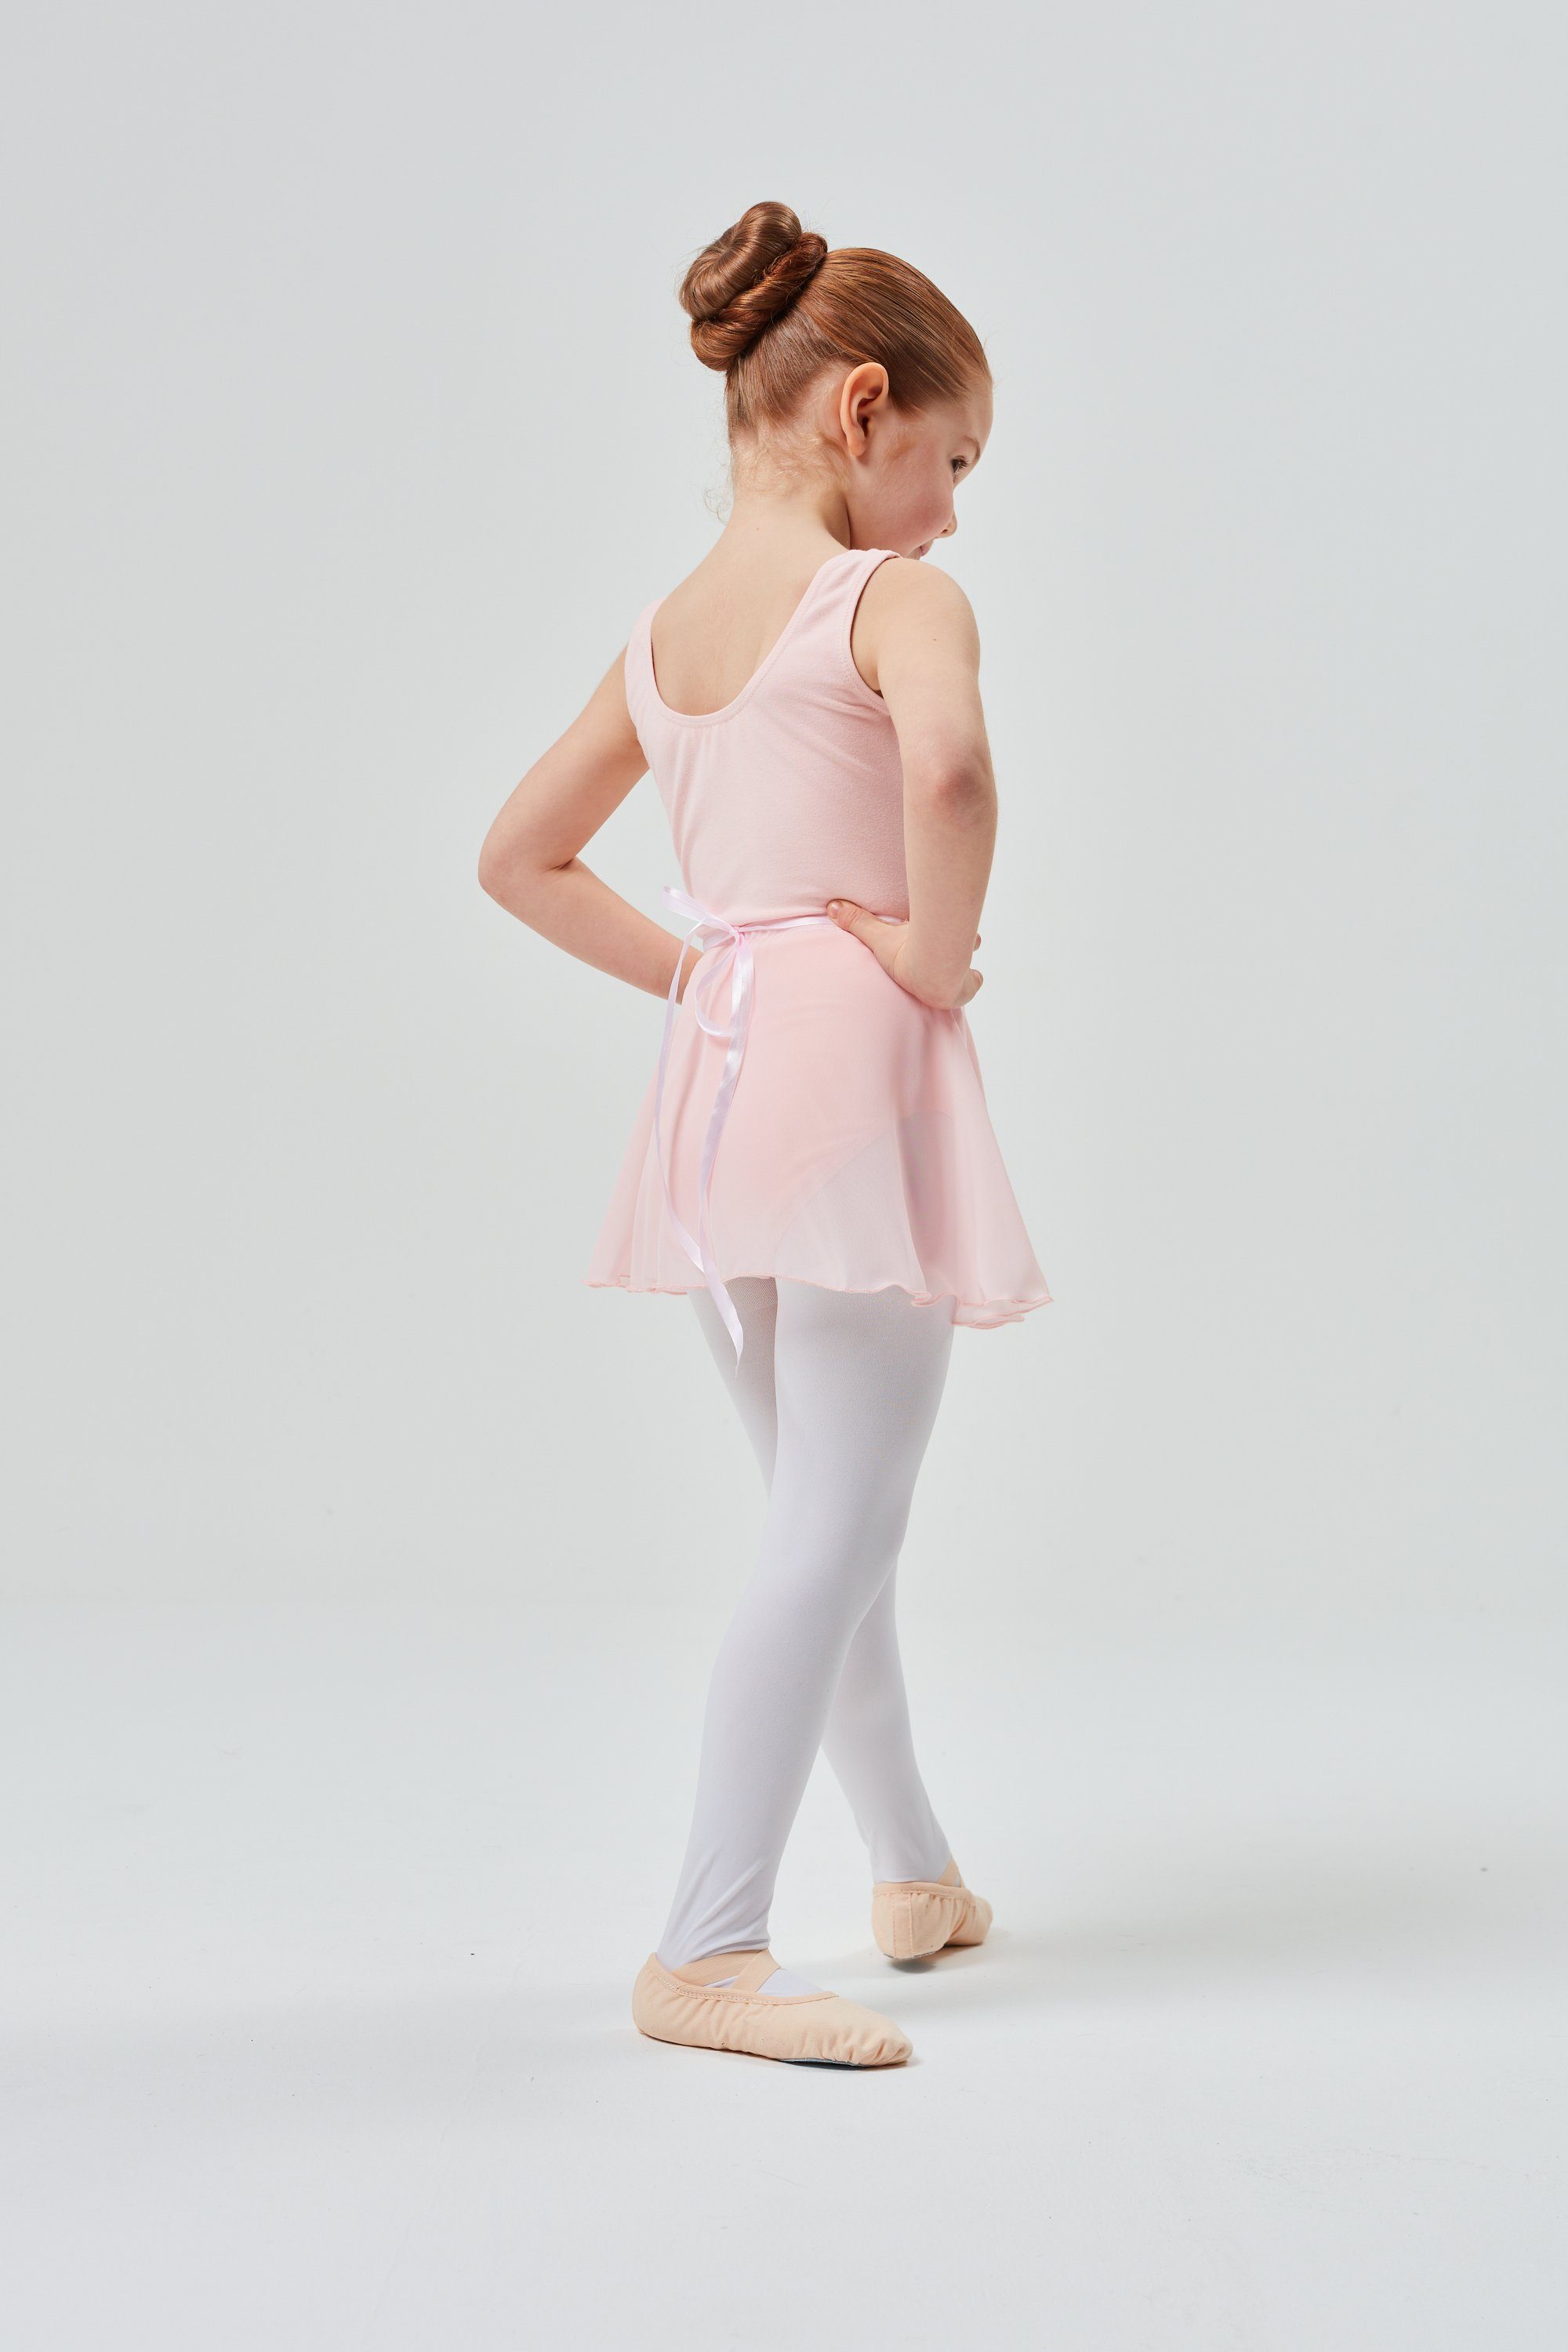 ärmelloser aus tanzmuster ballett-rosa zum weichem Ballettrock Ballettbody Wickelrock Emma Binden Baumwollmischgewebe